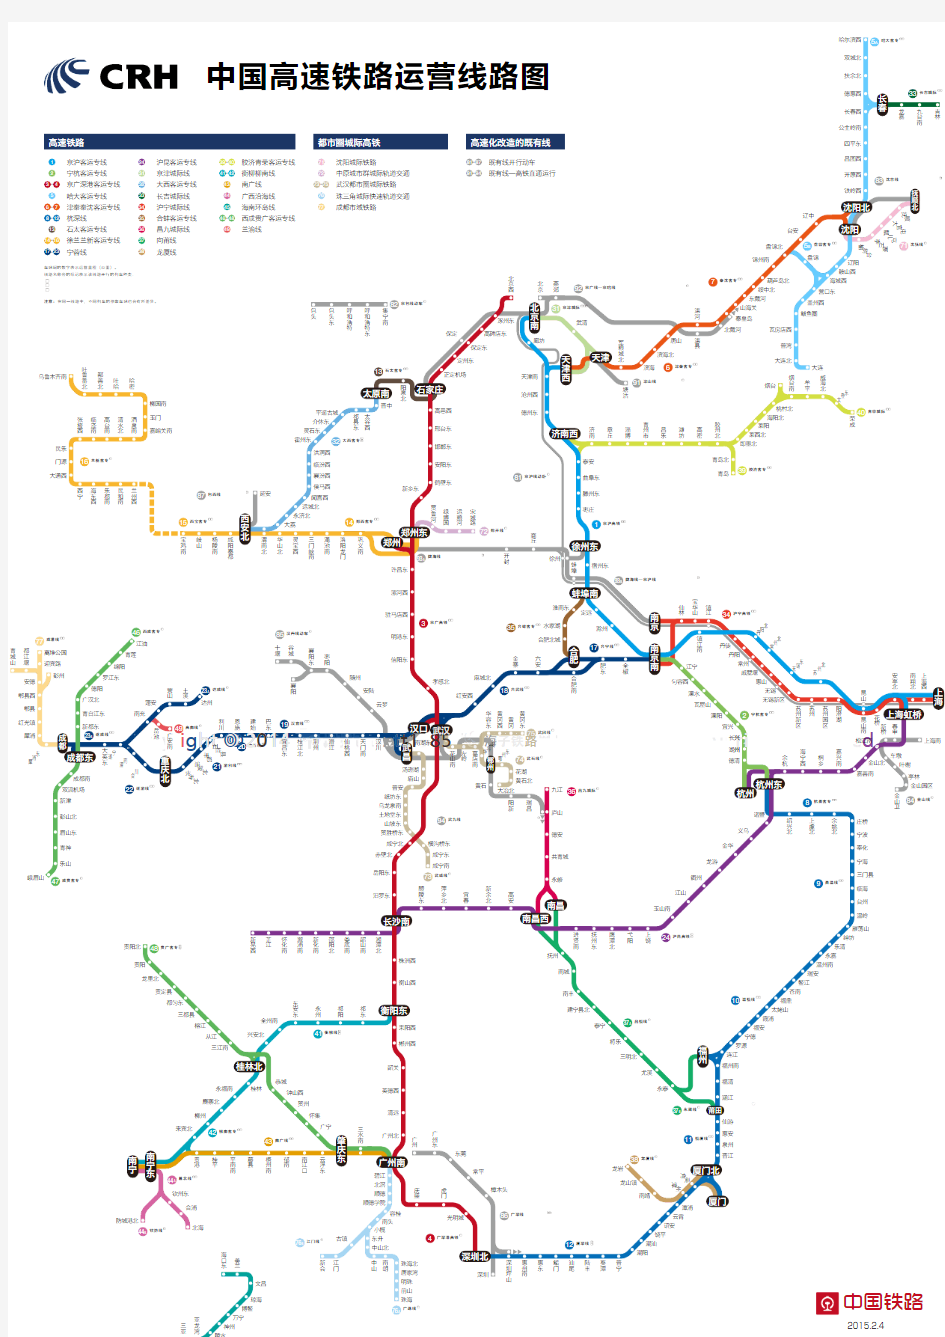 中国高铁运营线路图 中国高铁版图